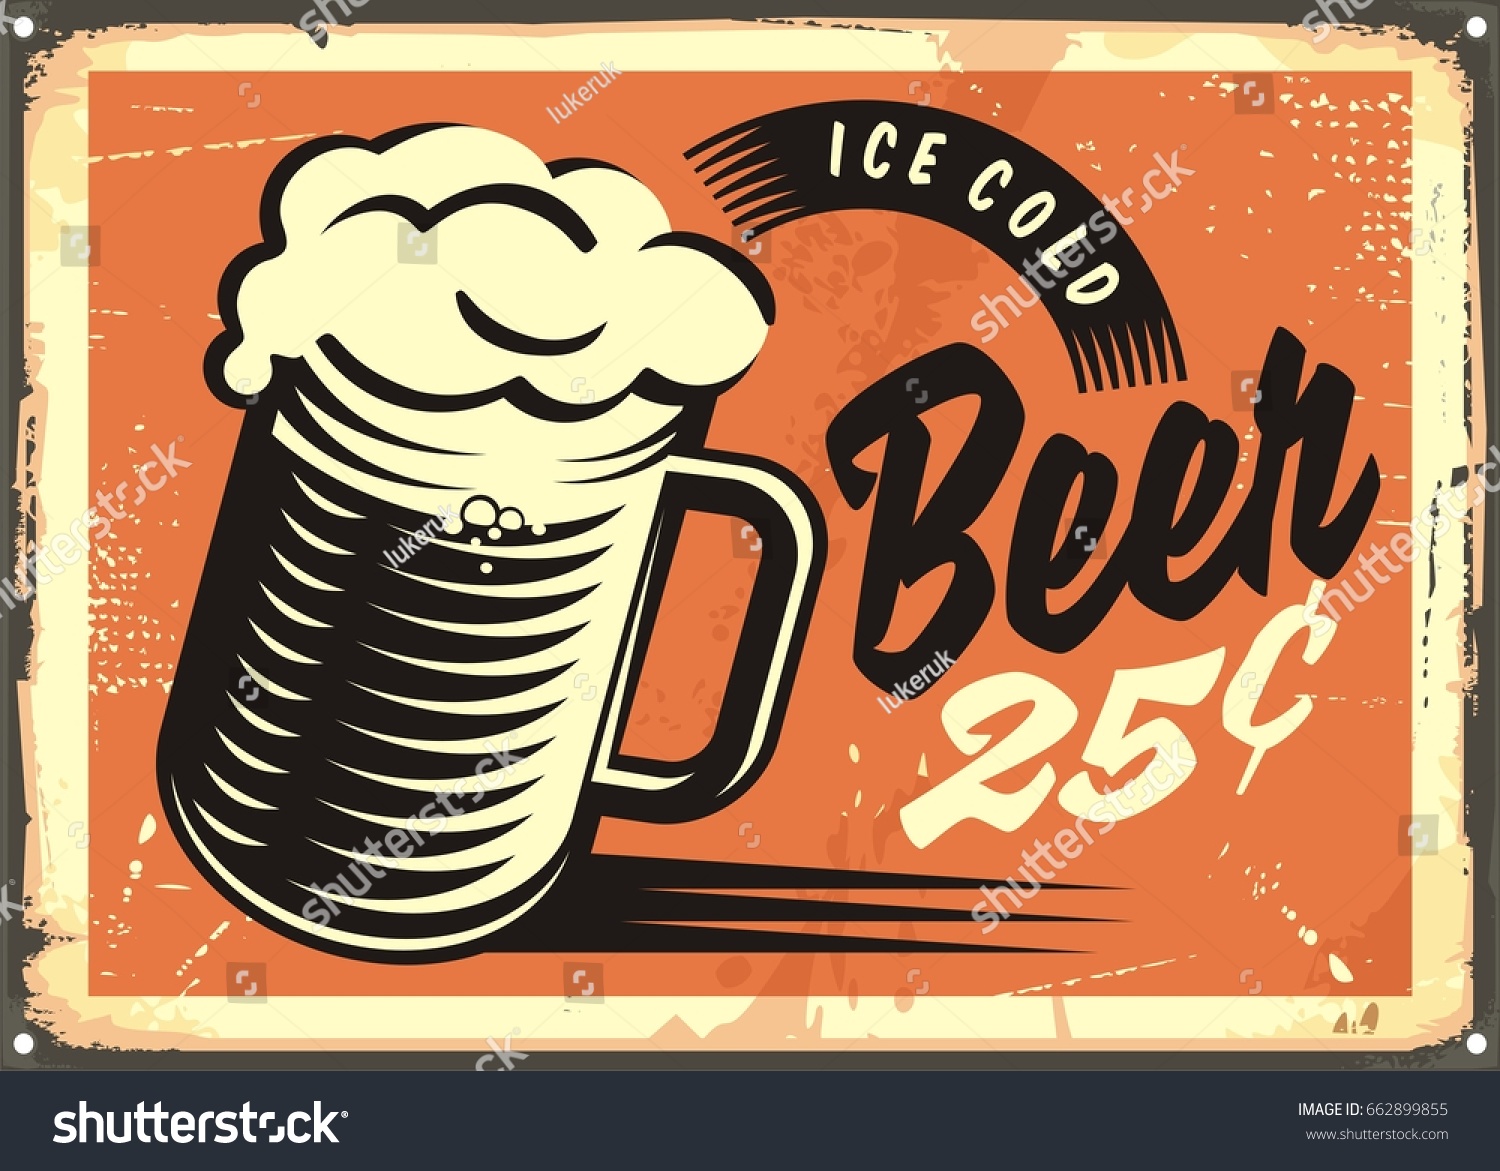 Werbung Im Retro Stil Mit Eiskalten Bierkrug Stock Vektorgrafik Lizenzfrei